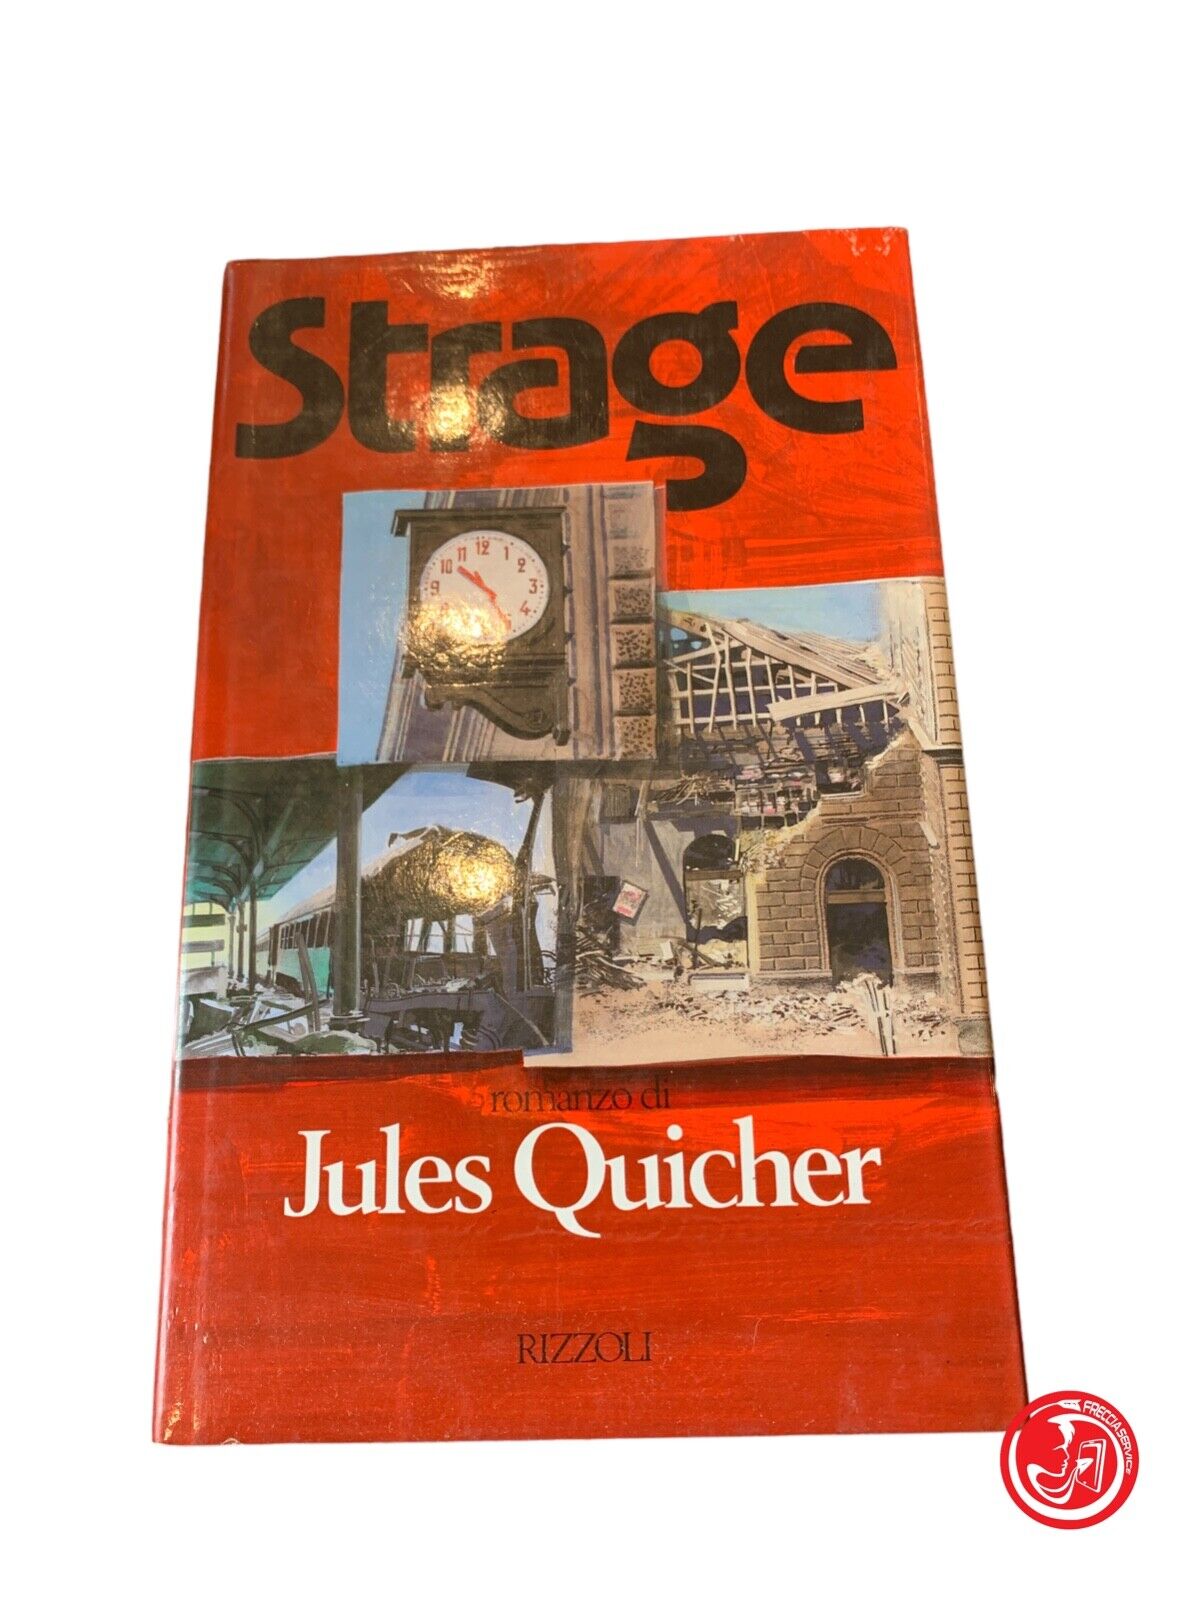 Strage - Jules Quicher - Rizzoli 1990